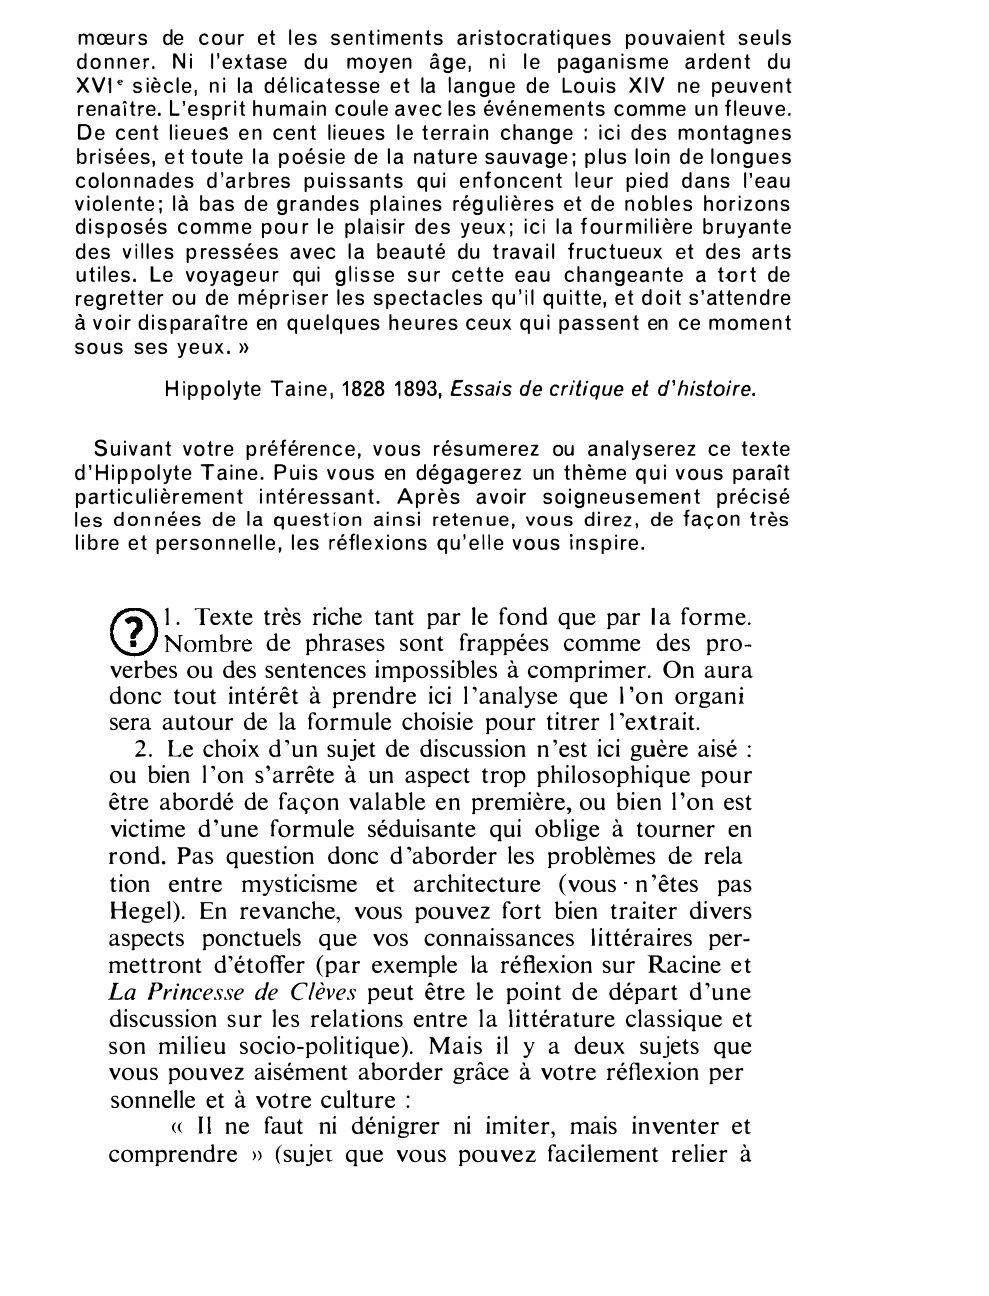 Prévisualisation du document « L'ESPRIT HUMAIN COULE AVEC LES ÉVÉNEMENTS COMME UN FLEUVE. .. » d'Hippolyte Taine, 1828 1893, Essais de critique et d'histoire.